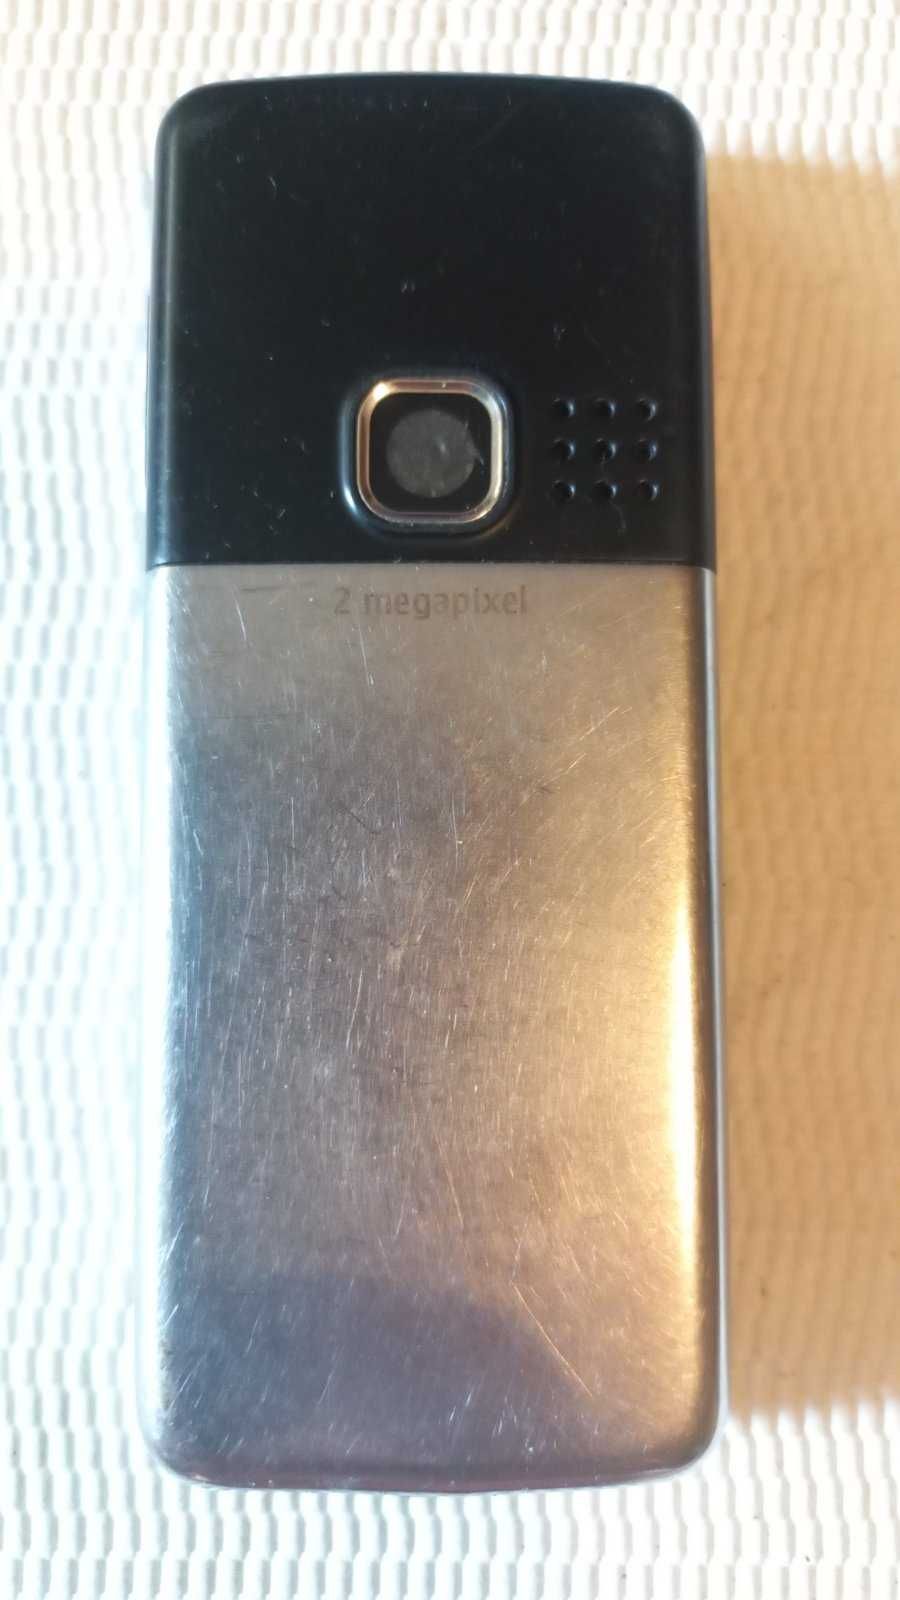 Мобильный телефон Nokia 6300